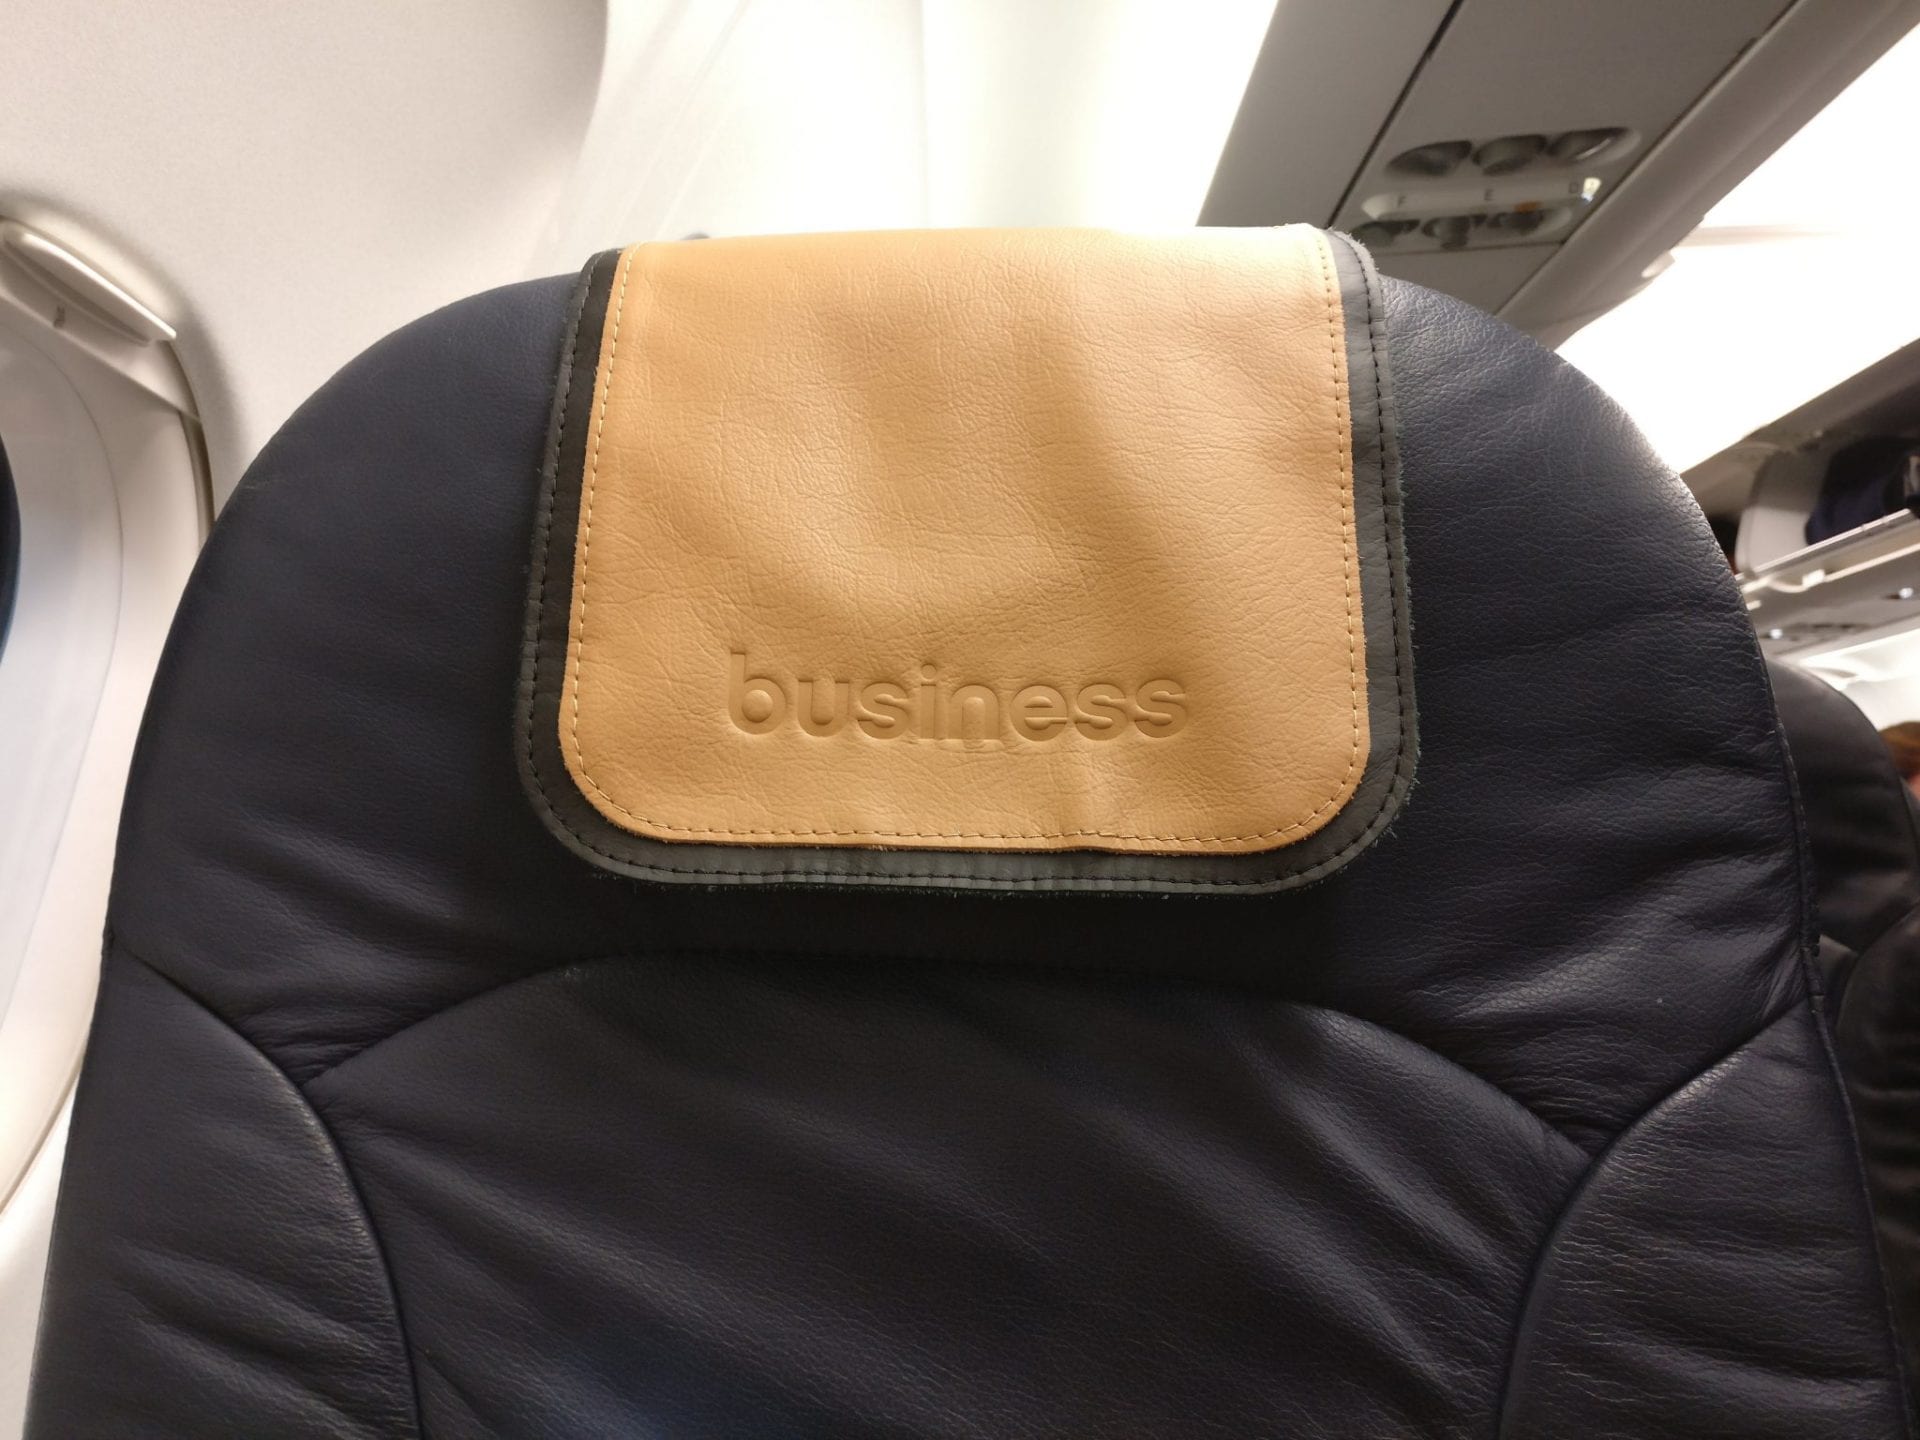 airberlin Business Class Seat